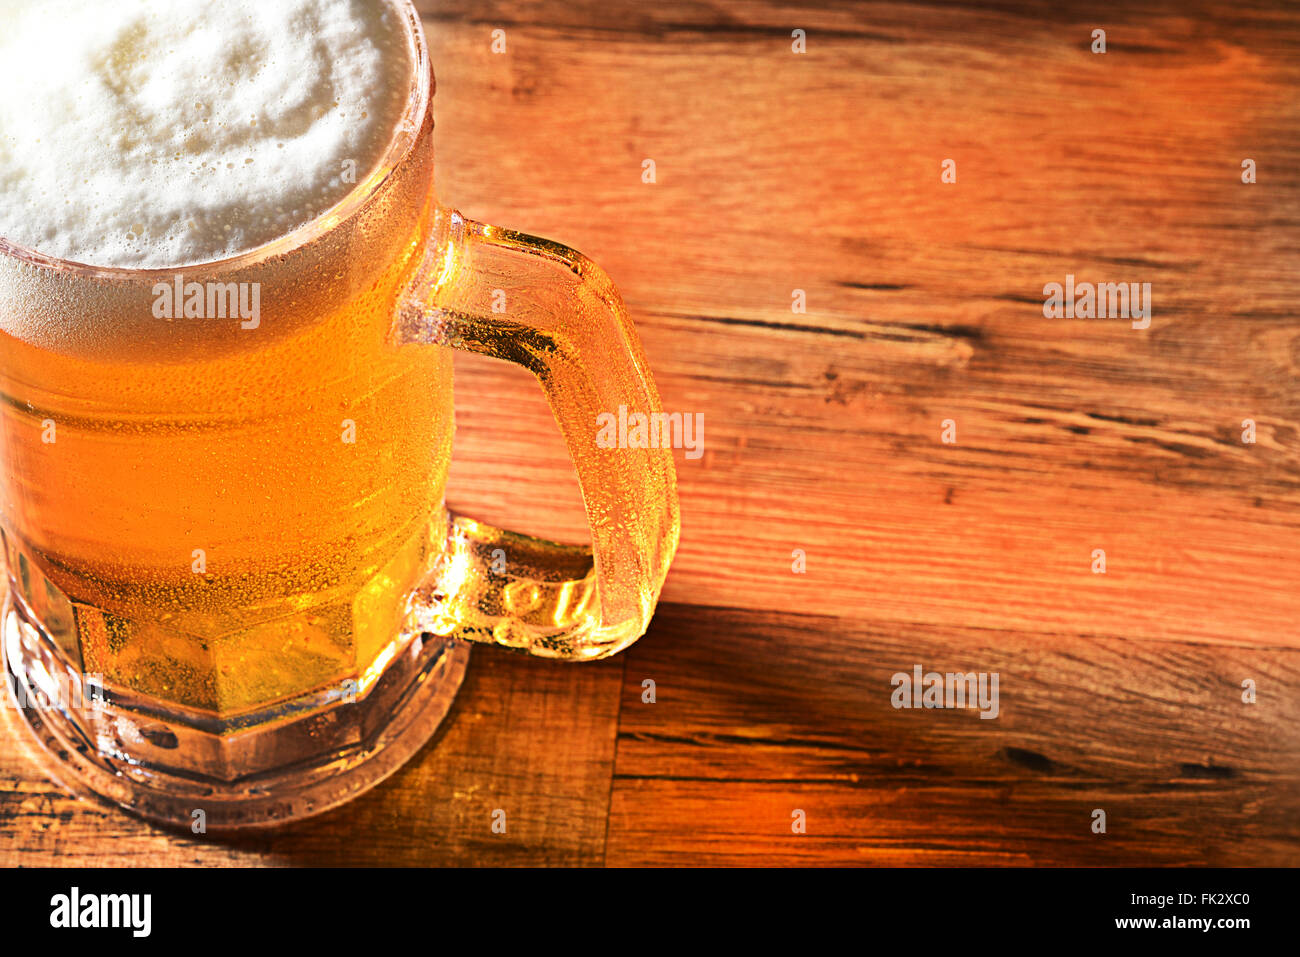 Primo piano di una birra fredda la tazza con una testa schiumoso e copia di spazio. Elevato angolo di visione con una calda luce laterale e riflessioni sulla tavola di legno. Foto Stock